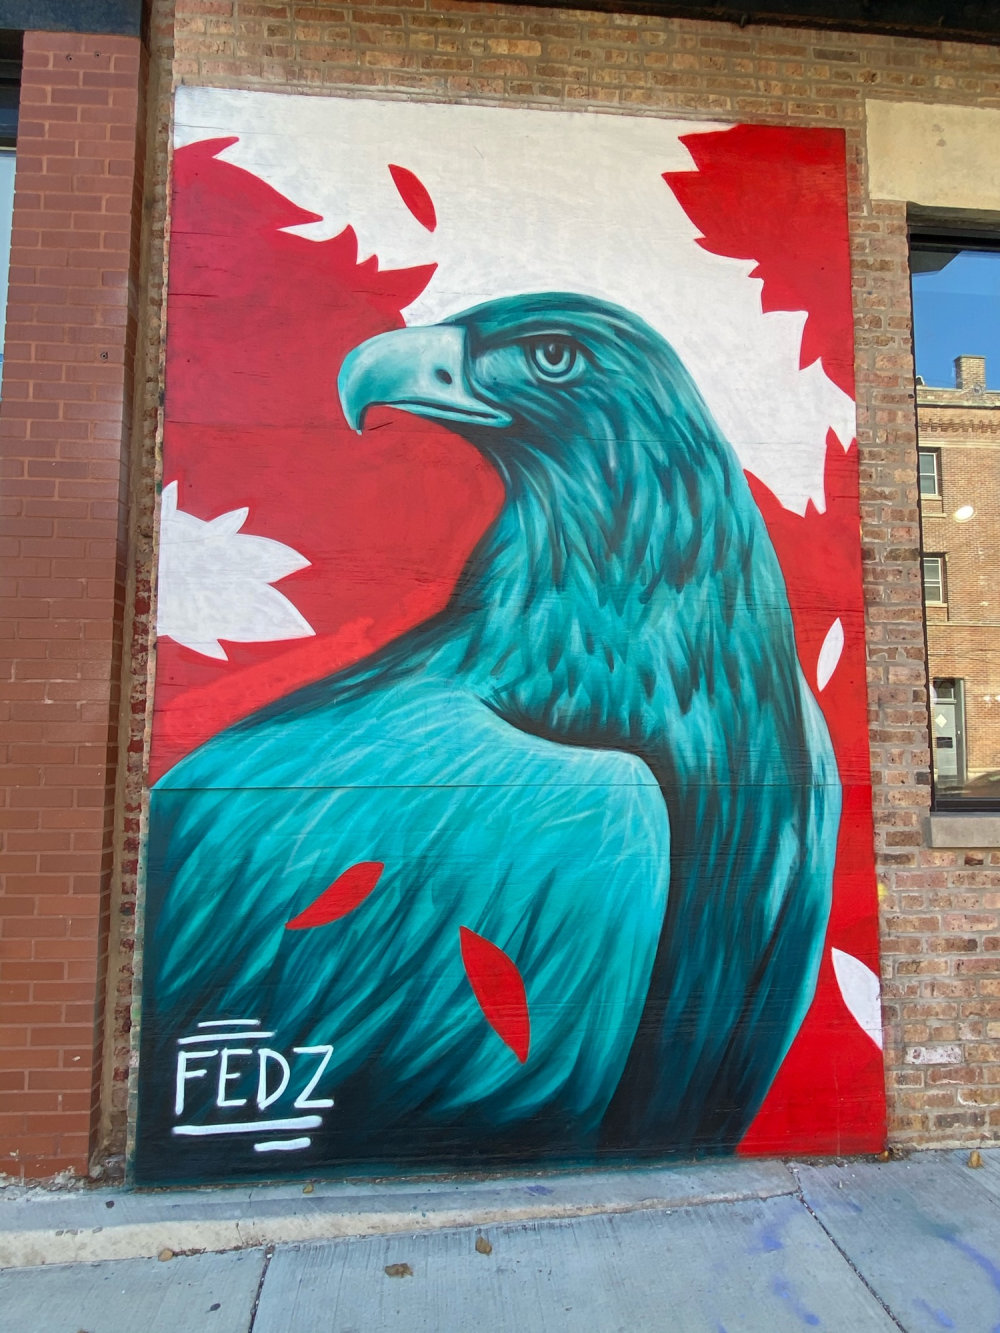 mural in Chicago by artist Fedz.